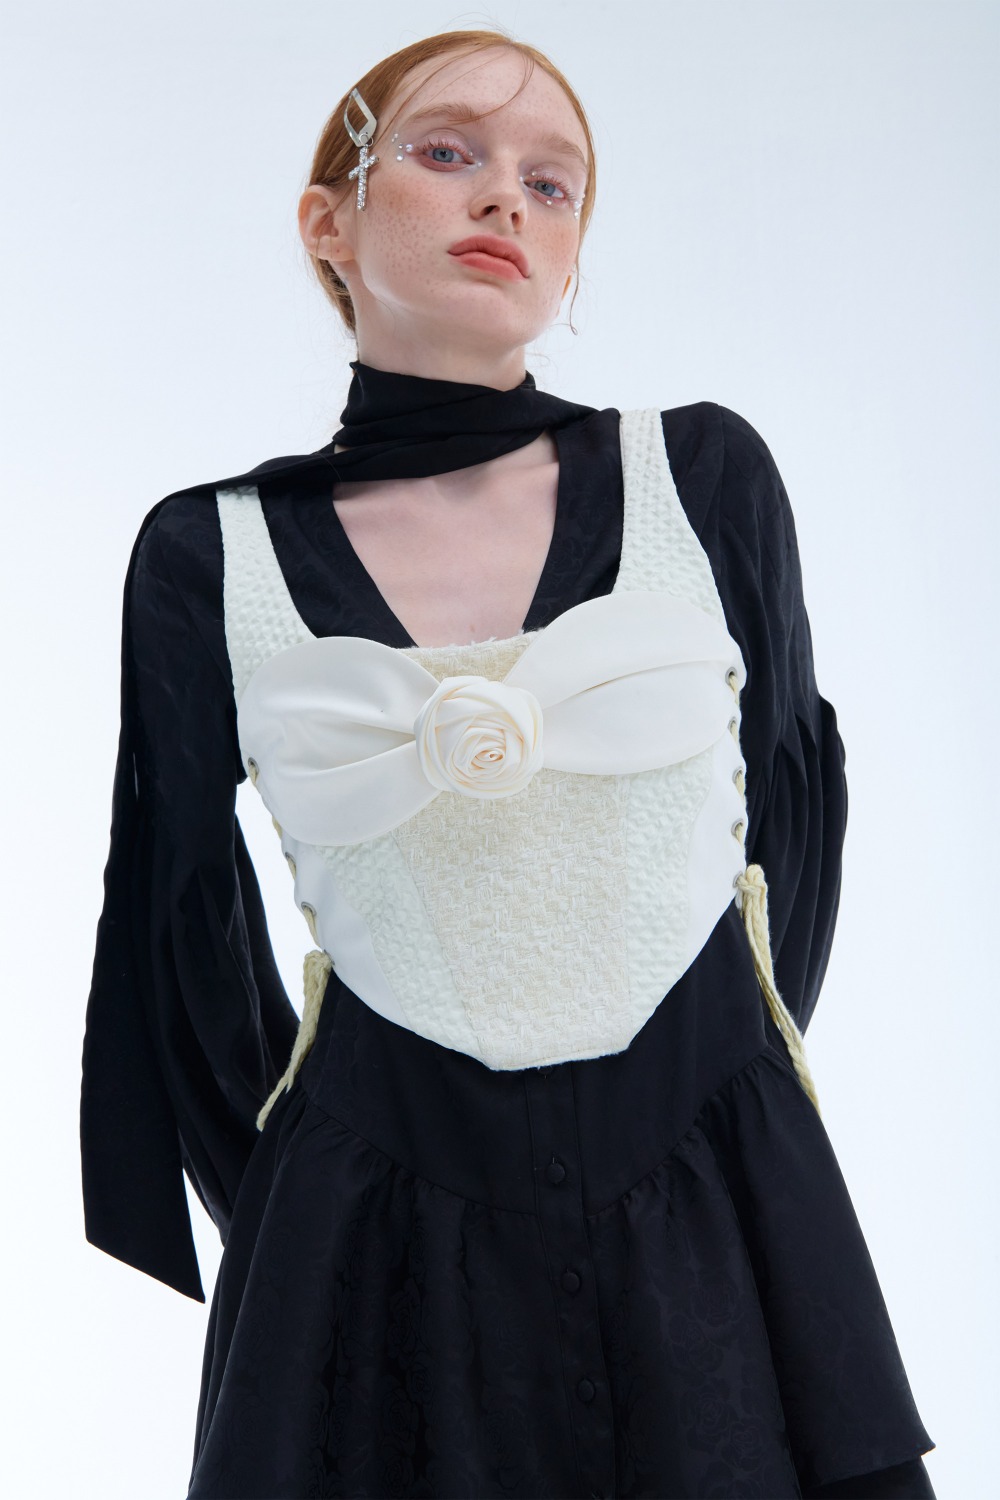 Rose tweed corset bustier